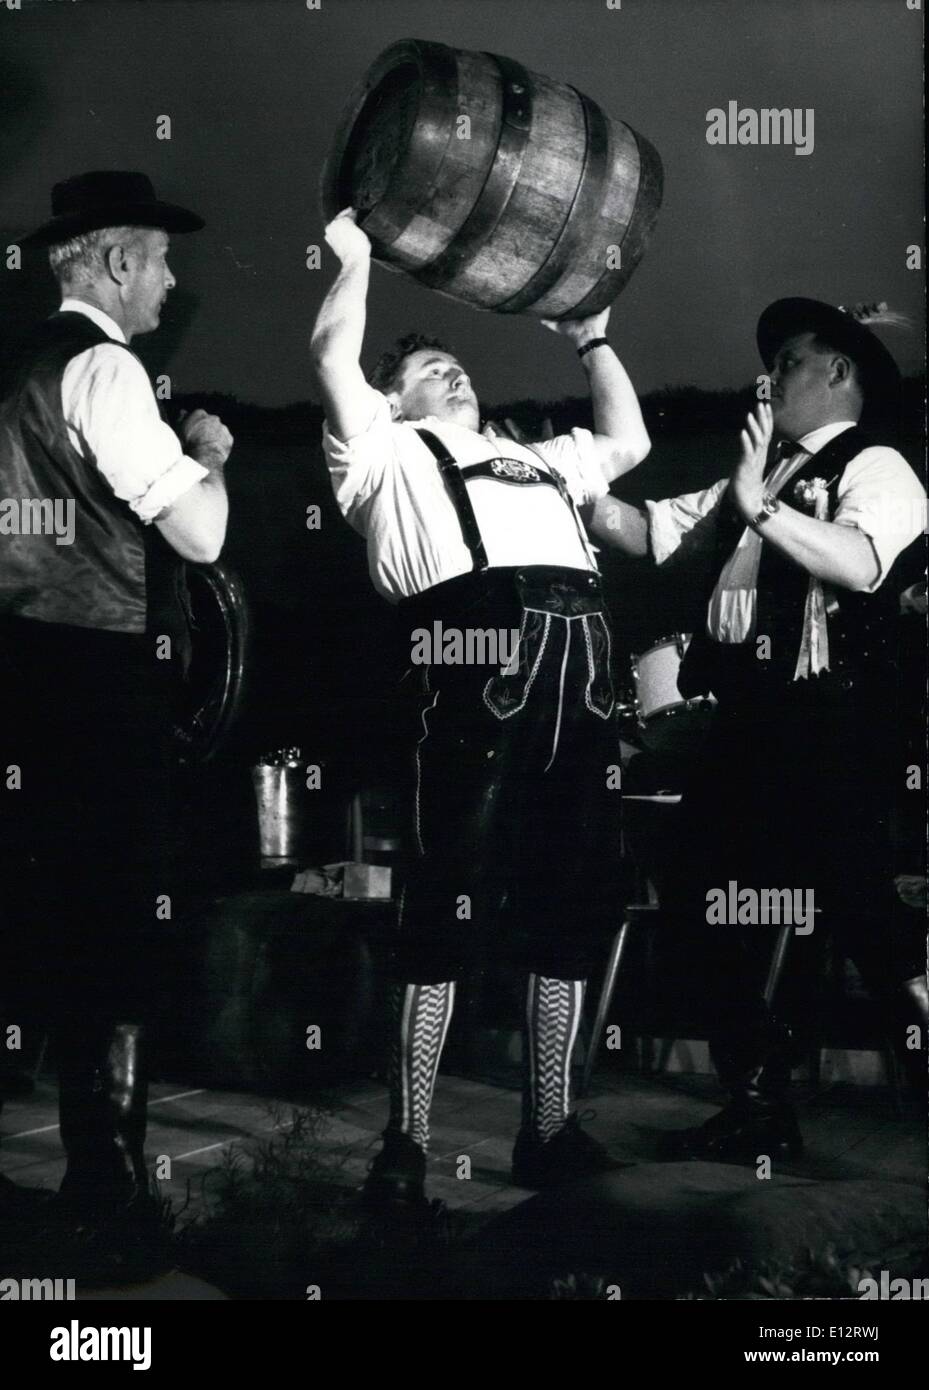 Febbraio 25, 2012 - Il Campione del Mondo in determinati di barili. I driver di birra delle grandi fabbriche di birra di Monaco di Baviera si è riunito il 5 maggio, la Birreria giorno del Festival 1963, per la canna tradizionale ascensore. Sei veri uomini bavarese ha cominciato con il sollevamento di 25 litri di barili (47 kg). Che potrebbero essere raggiunti tutti. Il 50 litro canna (88 kg) è stato revocato solo da Johann Schneider e da questa ha vinto il Campionato del Mondo nella canna del cilindro sollevatore. Keystone foto del 6 maggio 63. Foto Stock